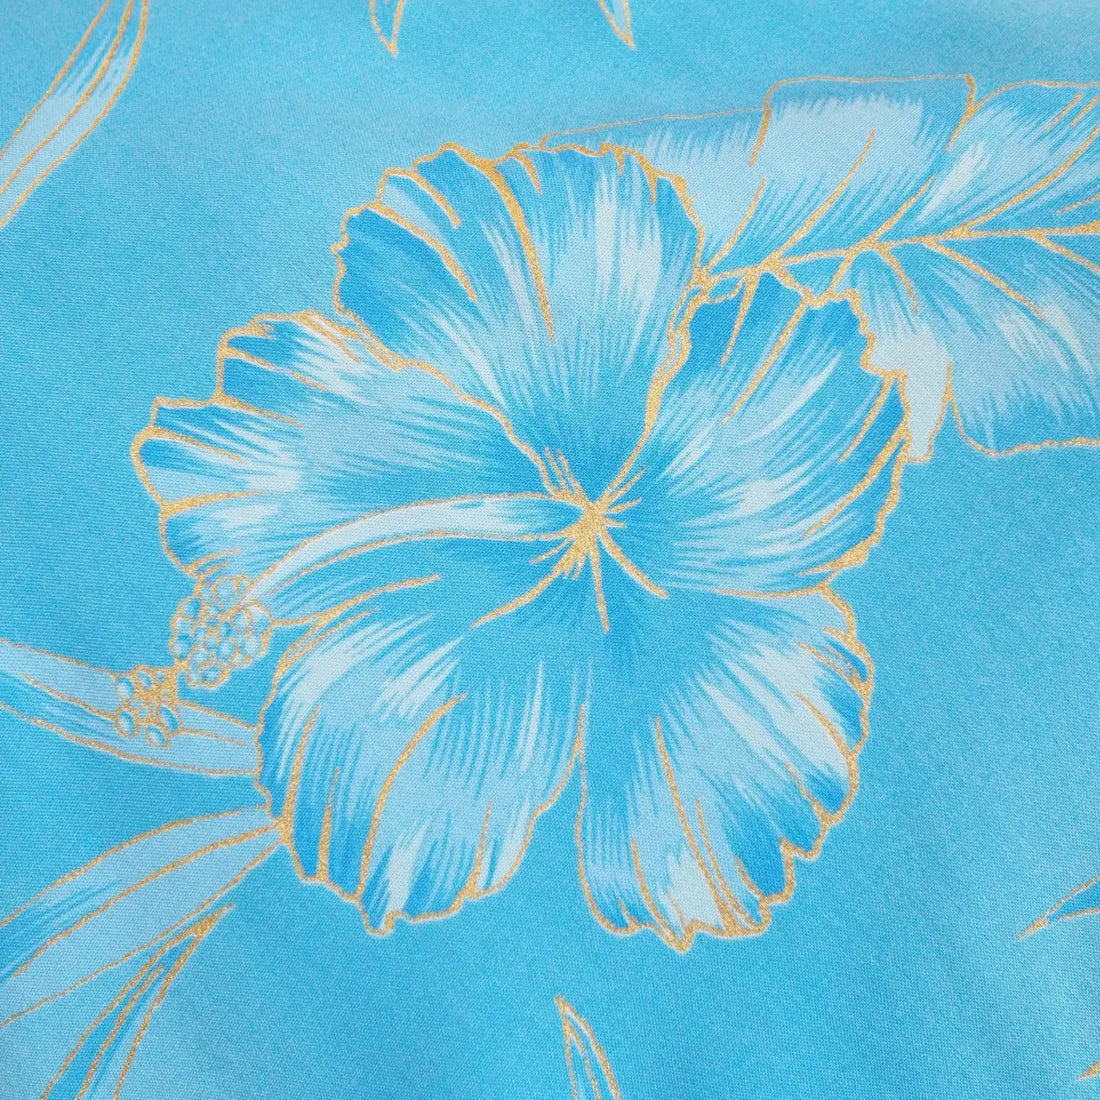 Hibiscus Hideaway Blue Rhythm Hawaiian Dress - Made In Hawaii